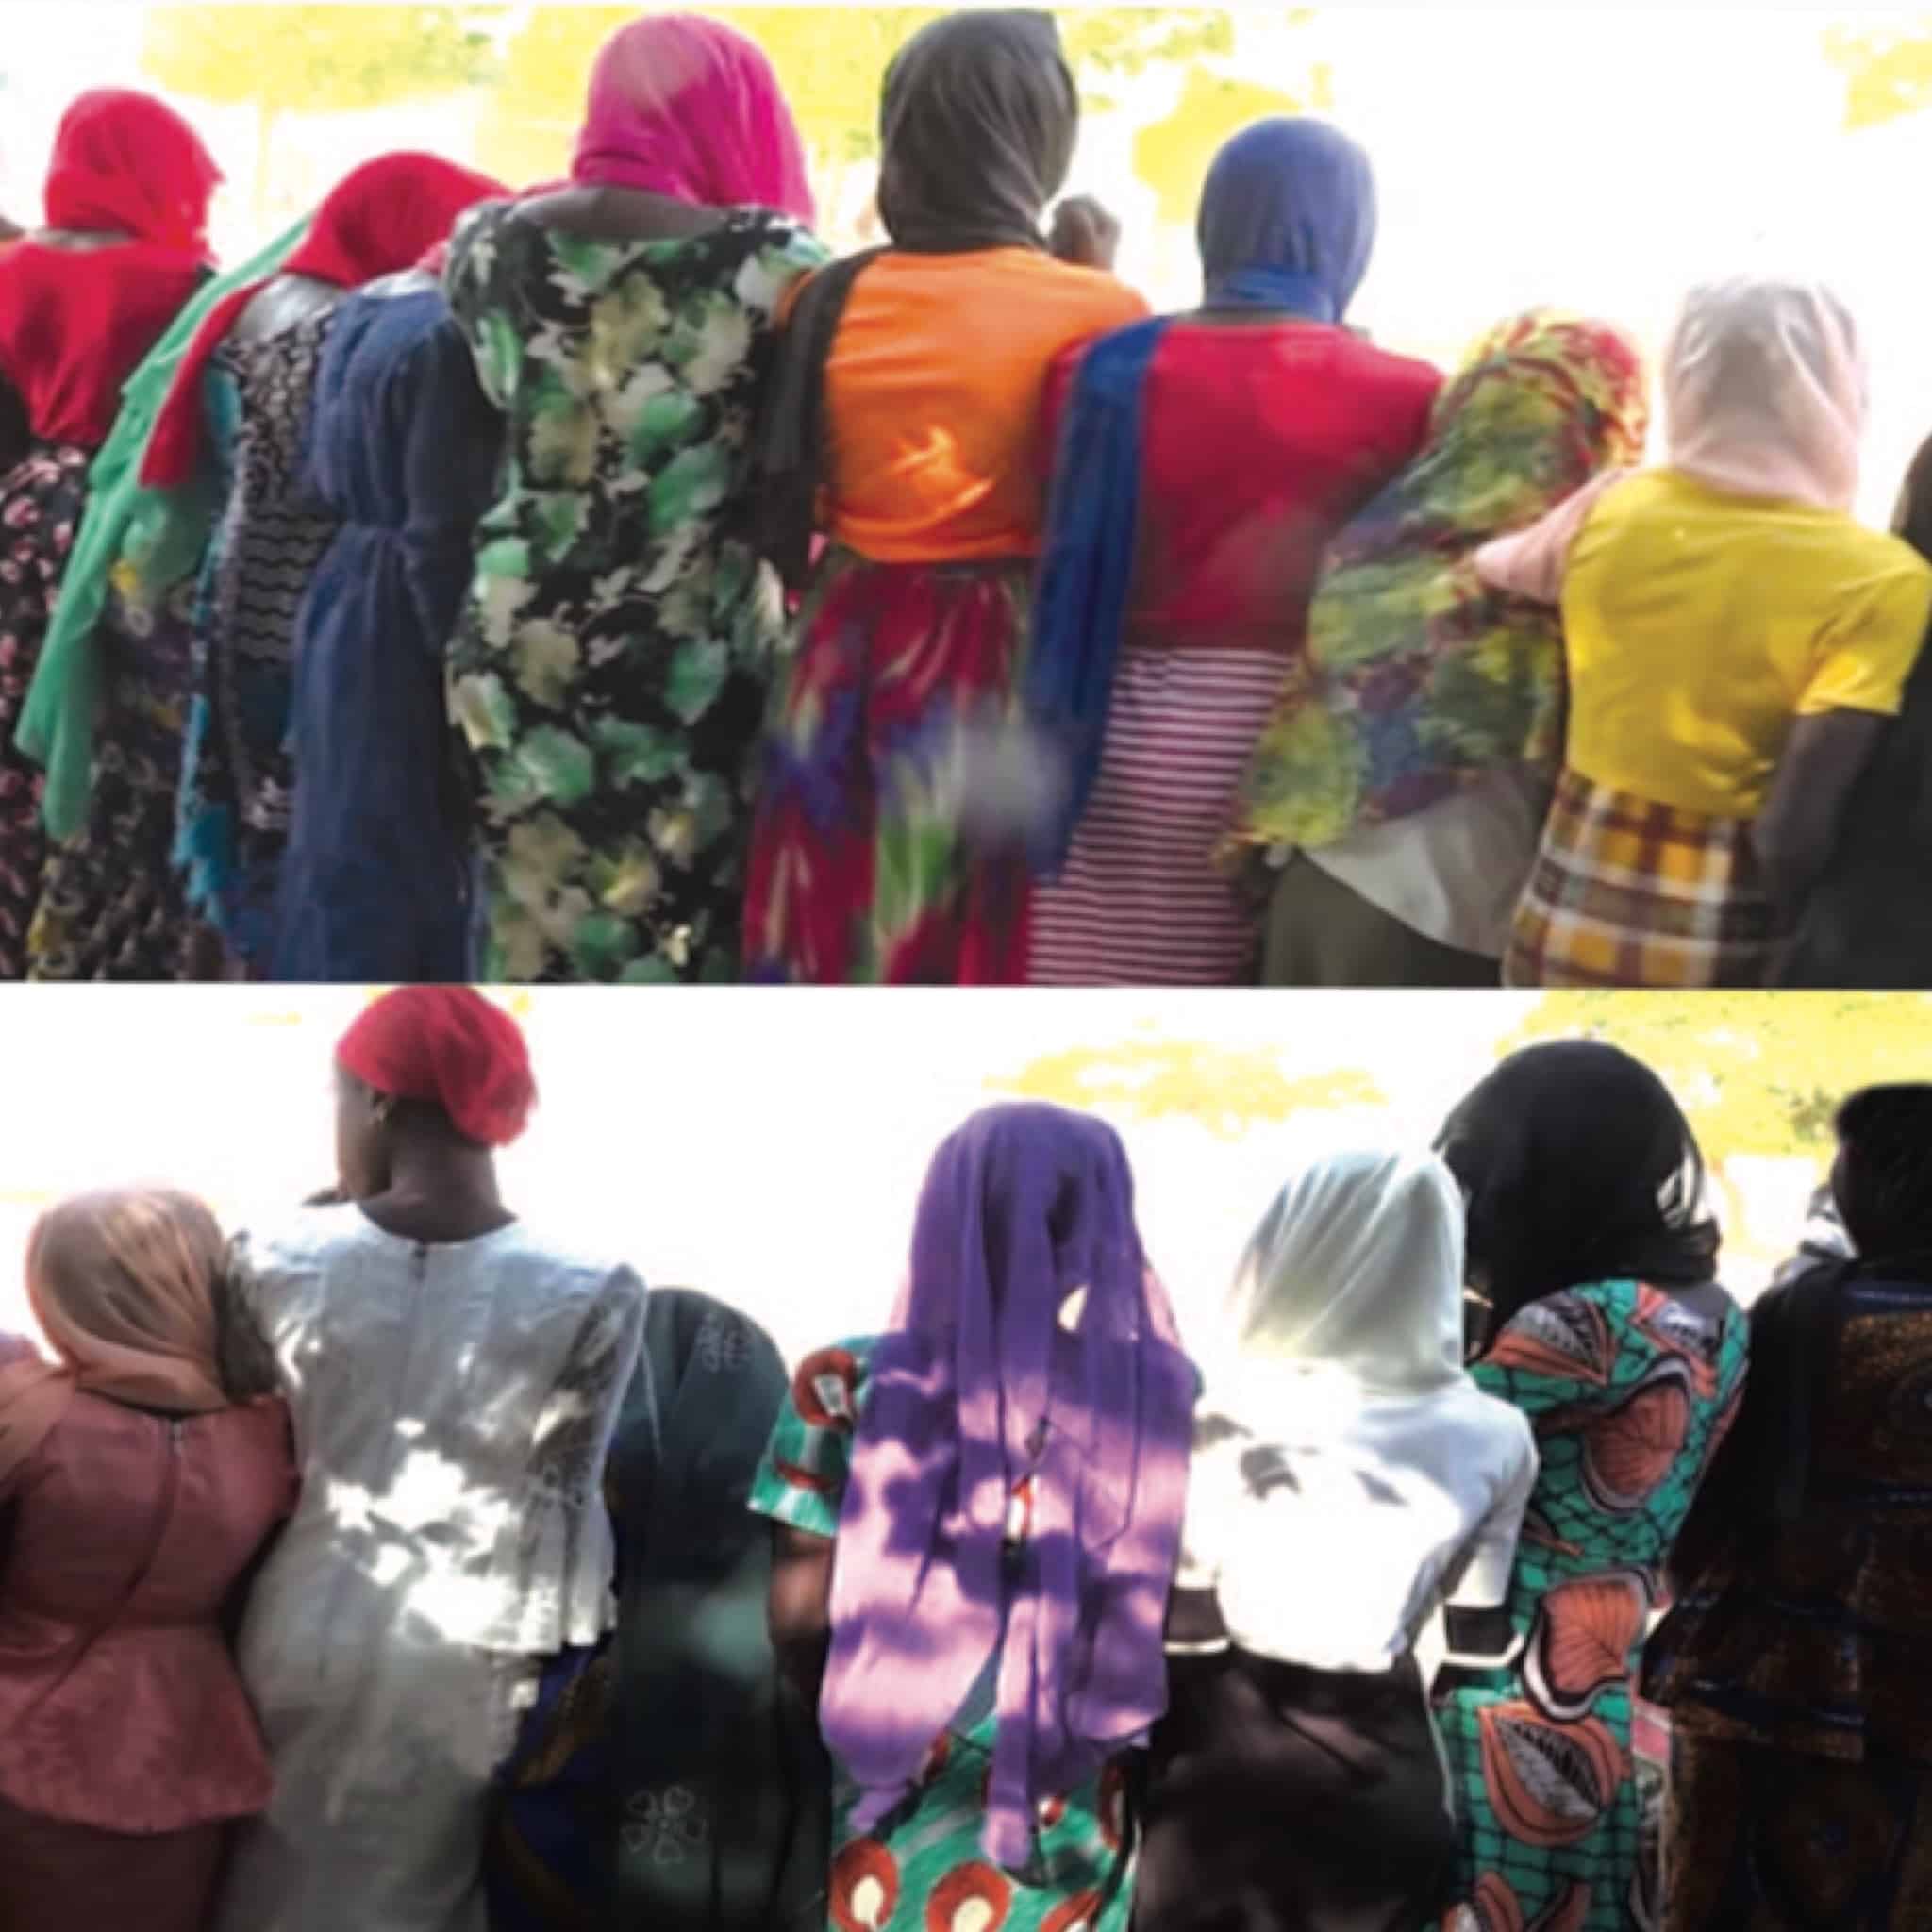 Vi0l sur 27 filles à Touba: Les victimes se confient